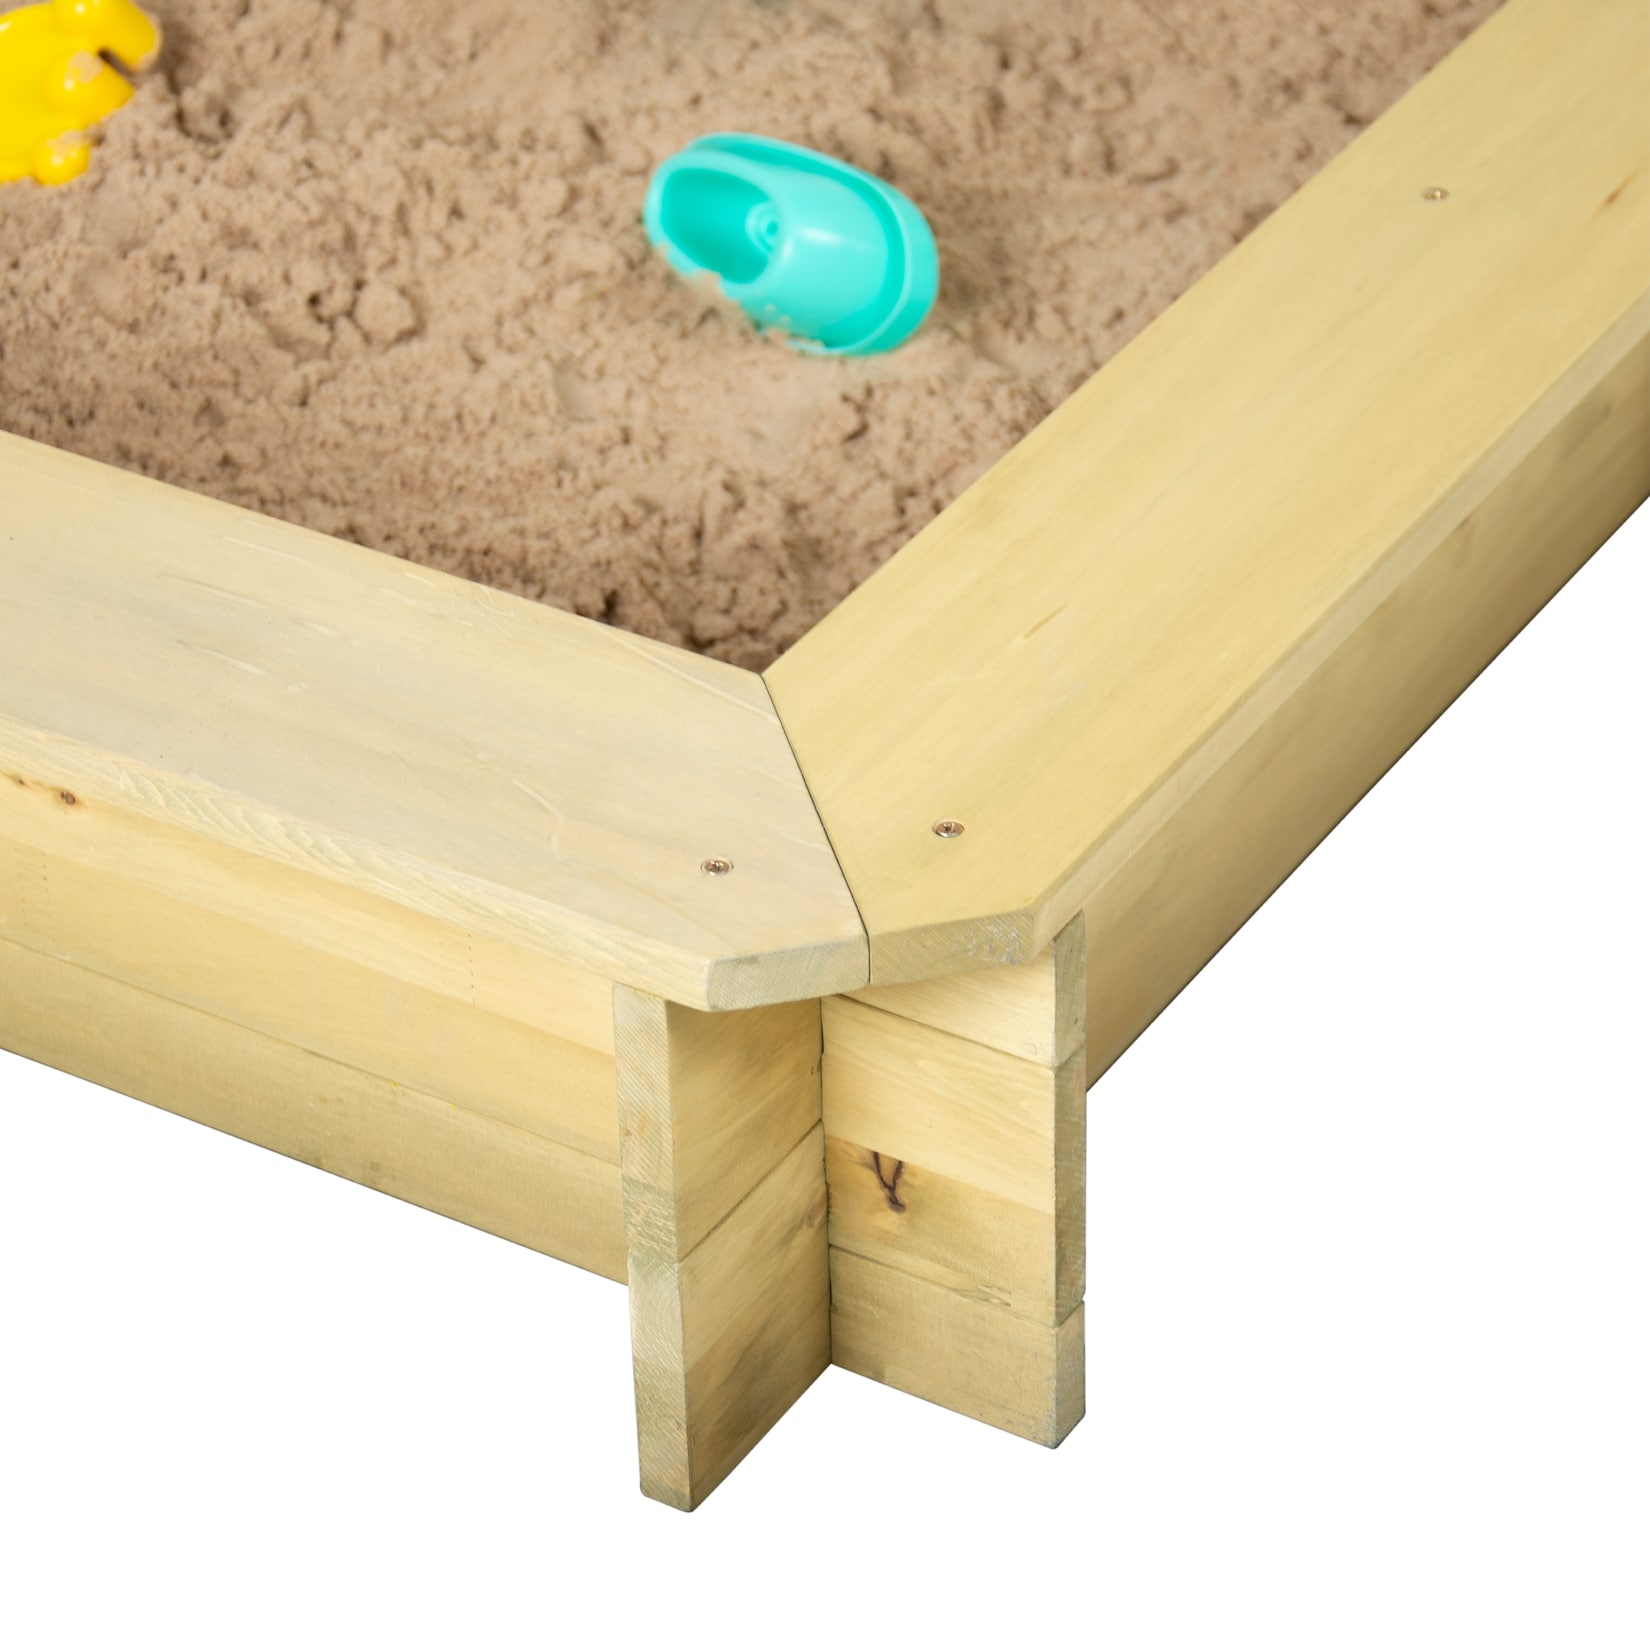 TP Toys Holz Sandkasten mit Sonnendach   natur